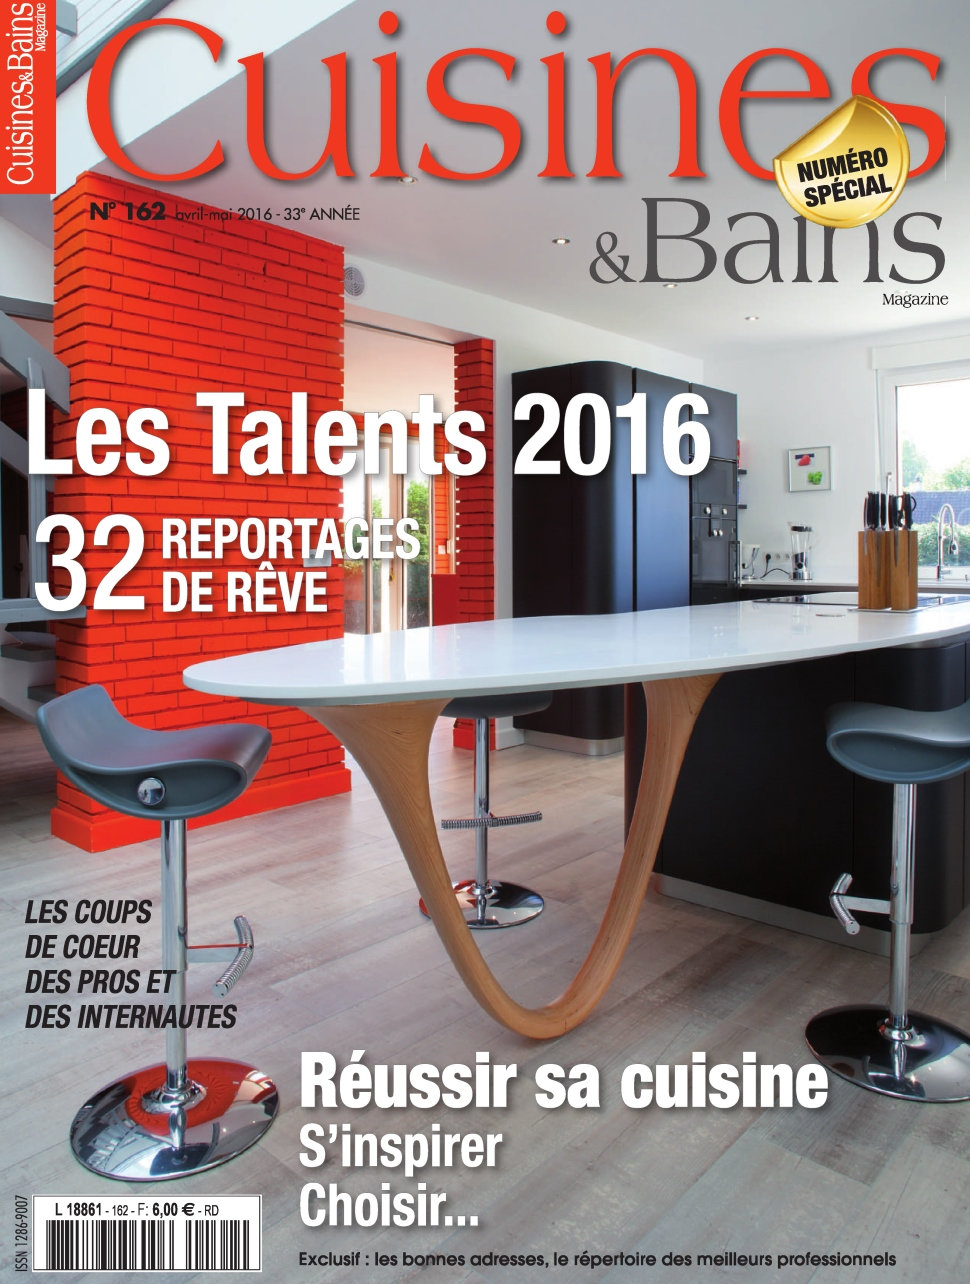 Cuisines & Bains N°162 - Avril/Mai 2016